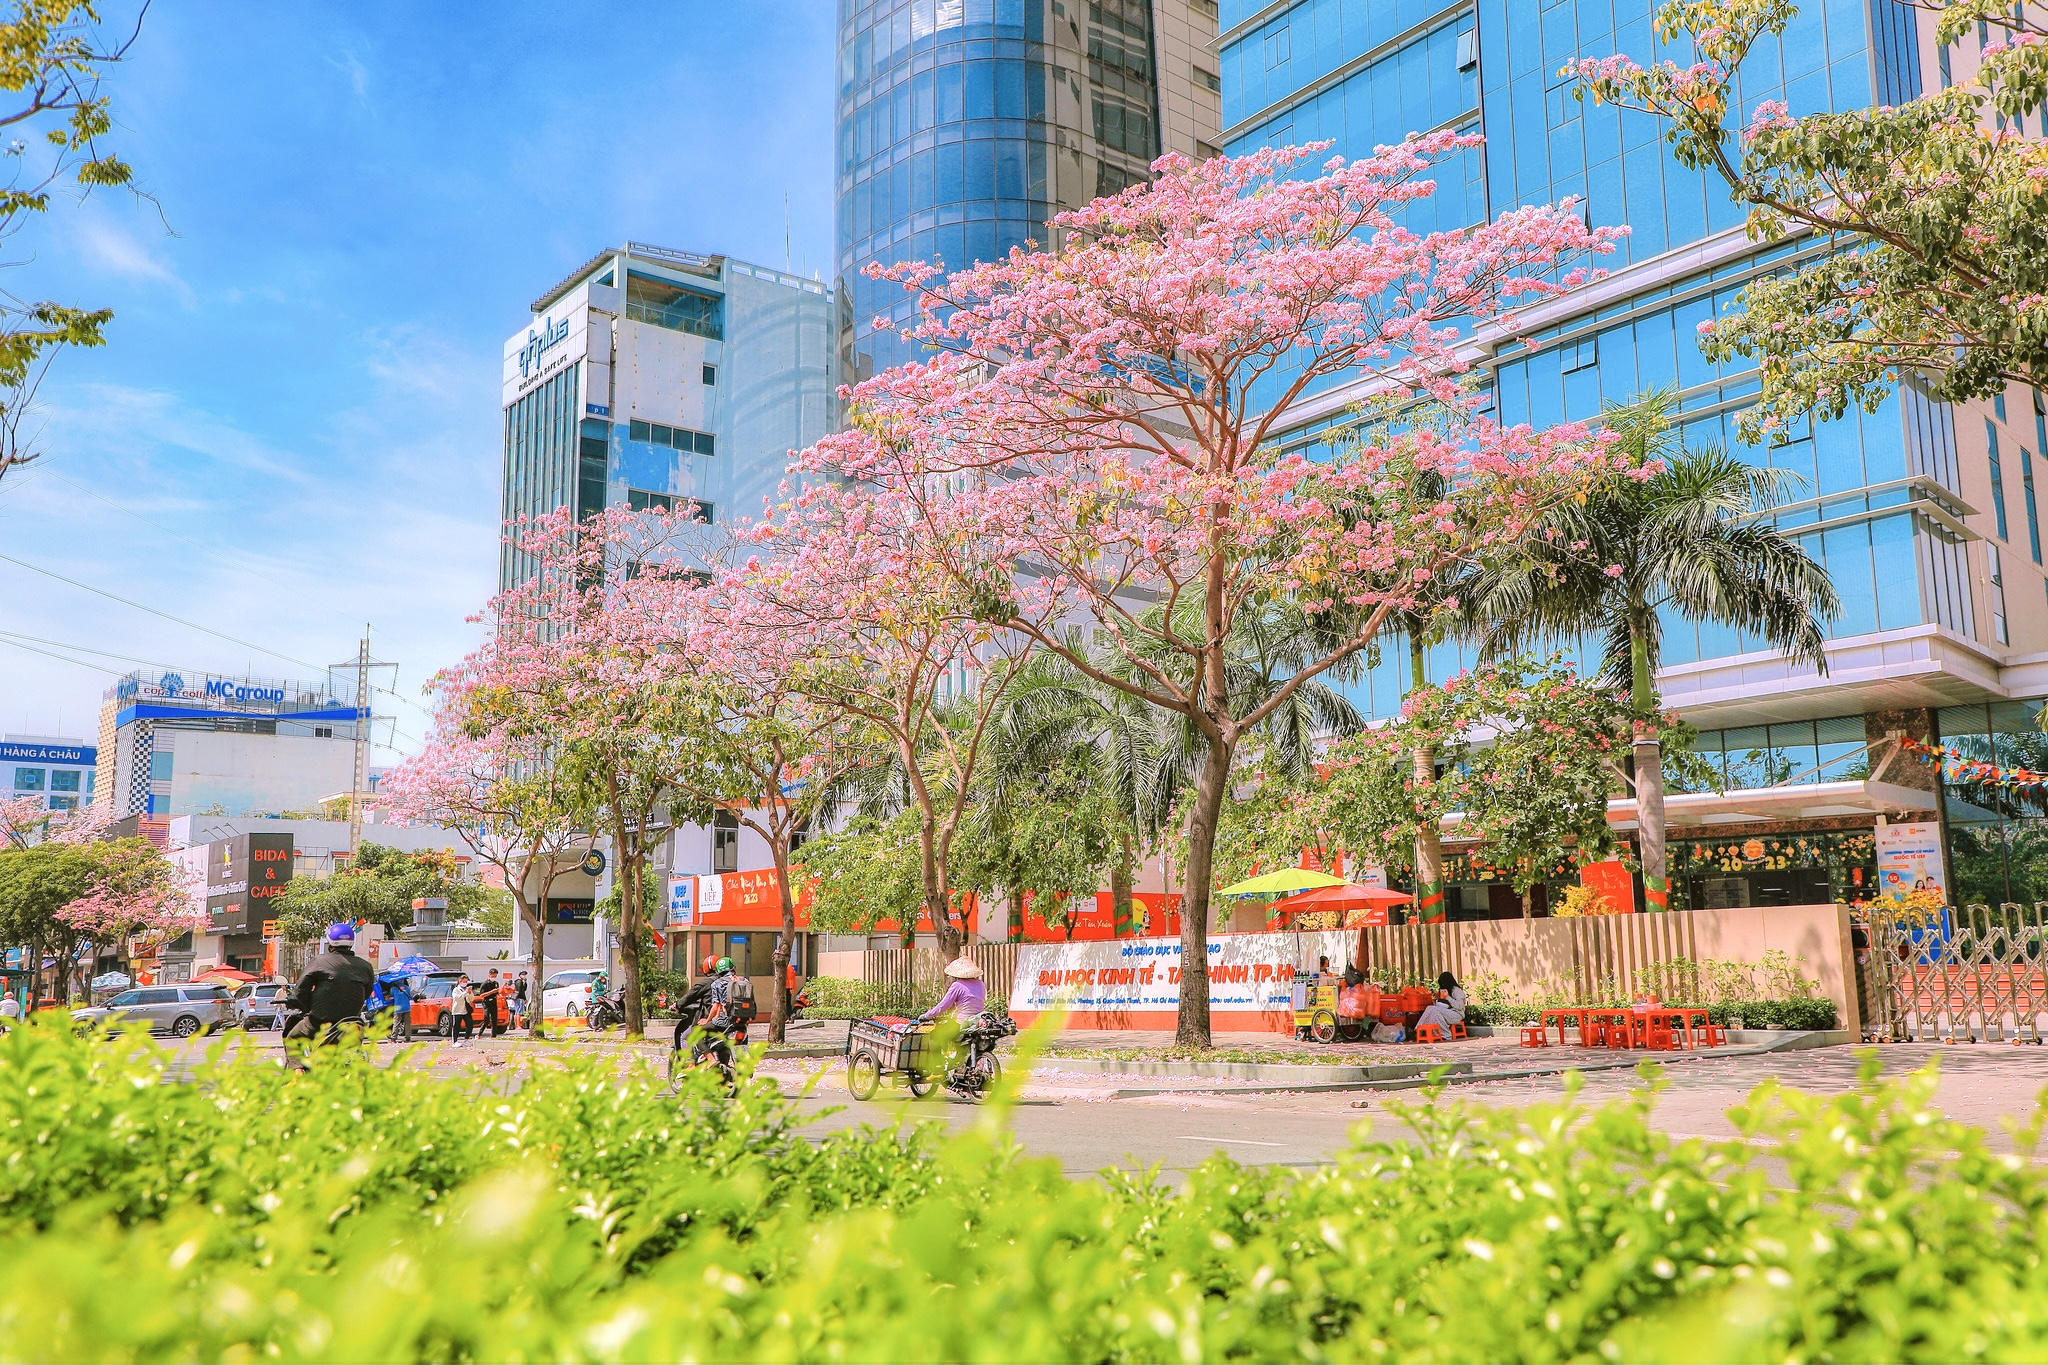 Mùa Kèn hồng Sài Gòn đã tô điểm cho những tuyến phố rực rỡ và được ví như góc trời Tây giữa lòng Sài Gòn phồn hoa.